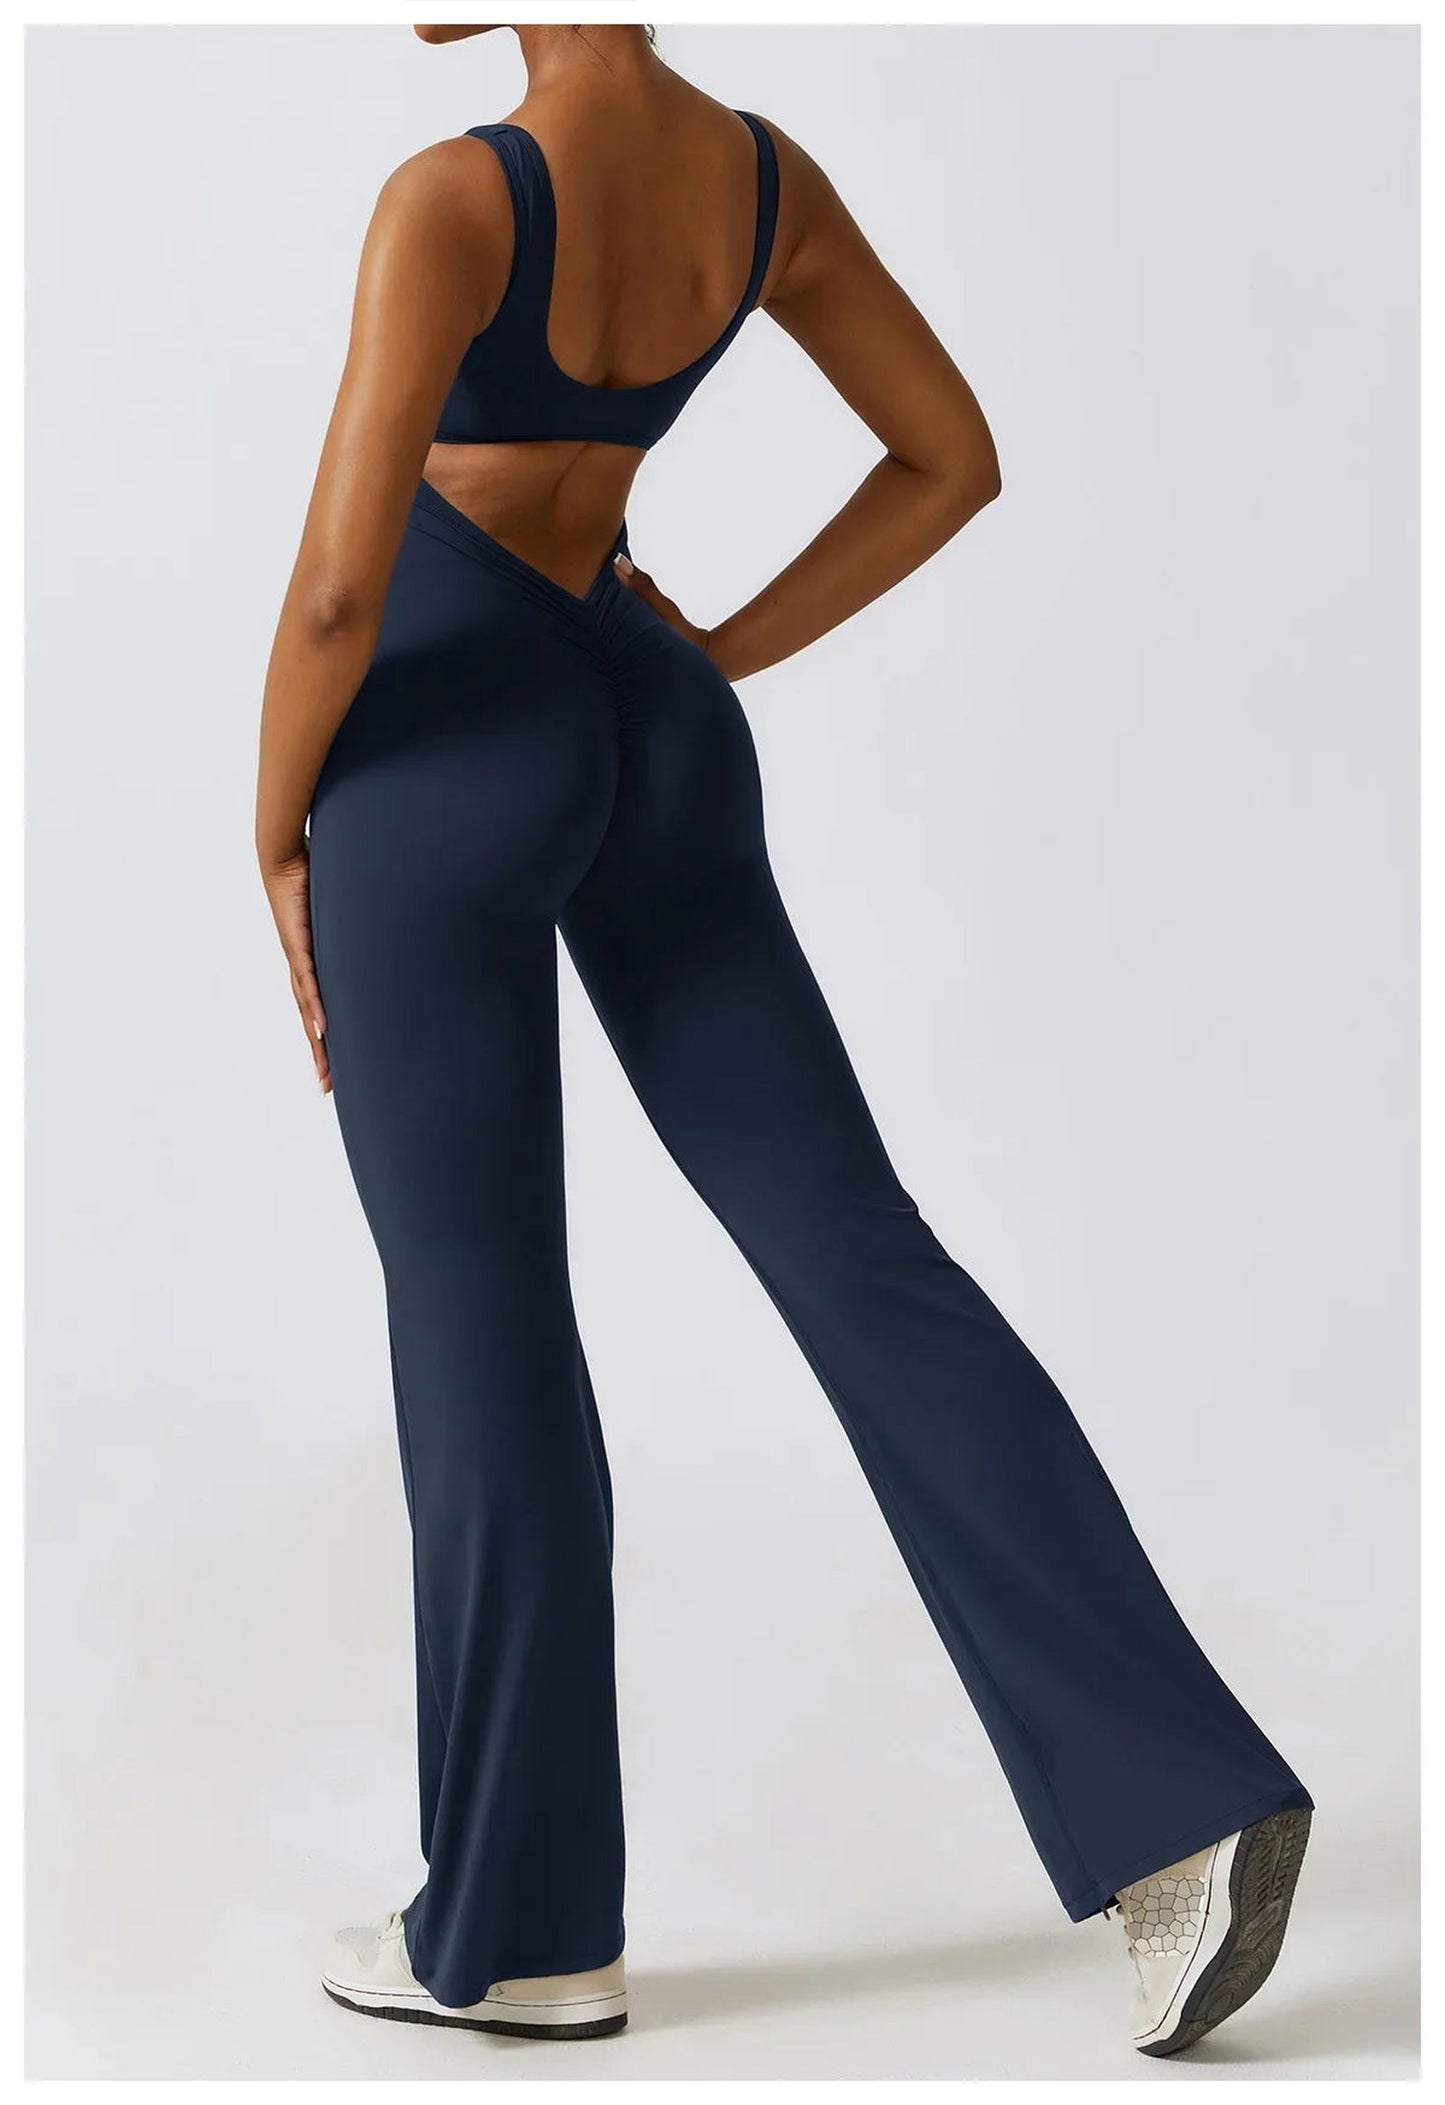 VogueFlare - V-Back Flared Viral Backless Jumpsuit - Luceroclub.com